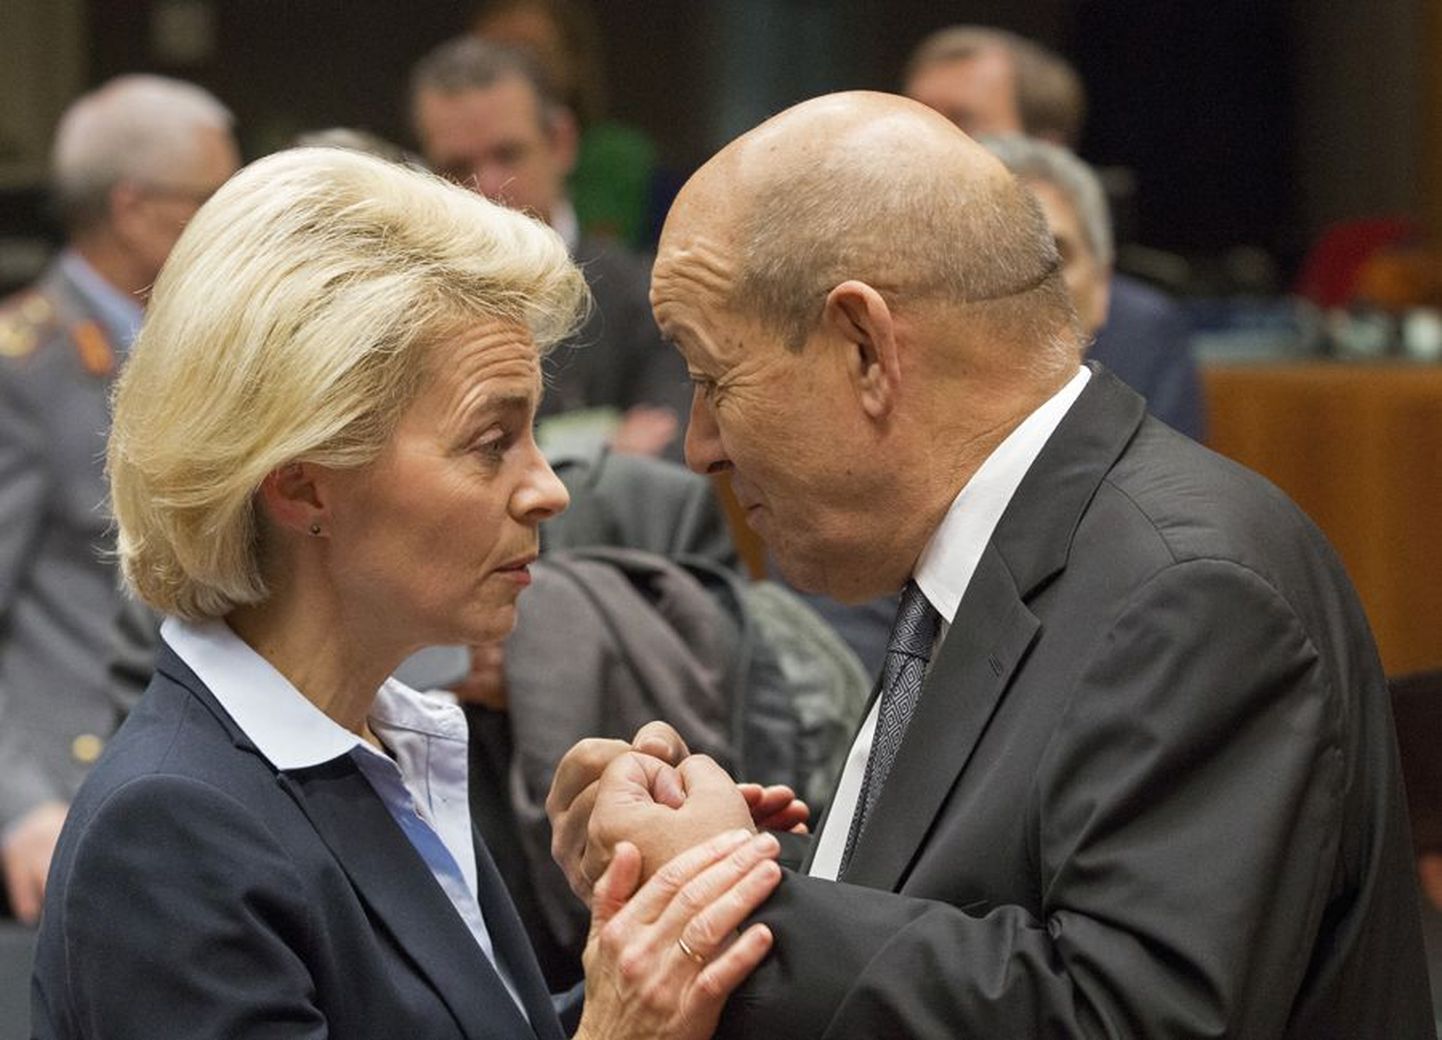 Saksa kaitseminister Ursula von der Leyen oli üks neist, kes avaldasid eile toetust Prantsusmaa kaitseministrile Jean-Yves Le Drianile.